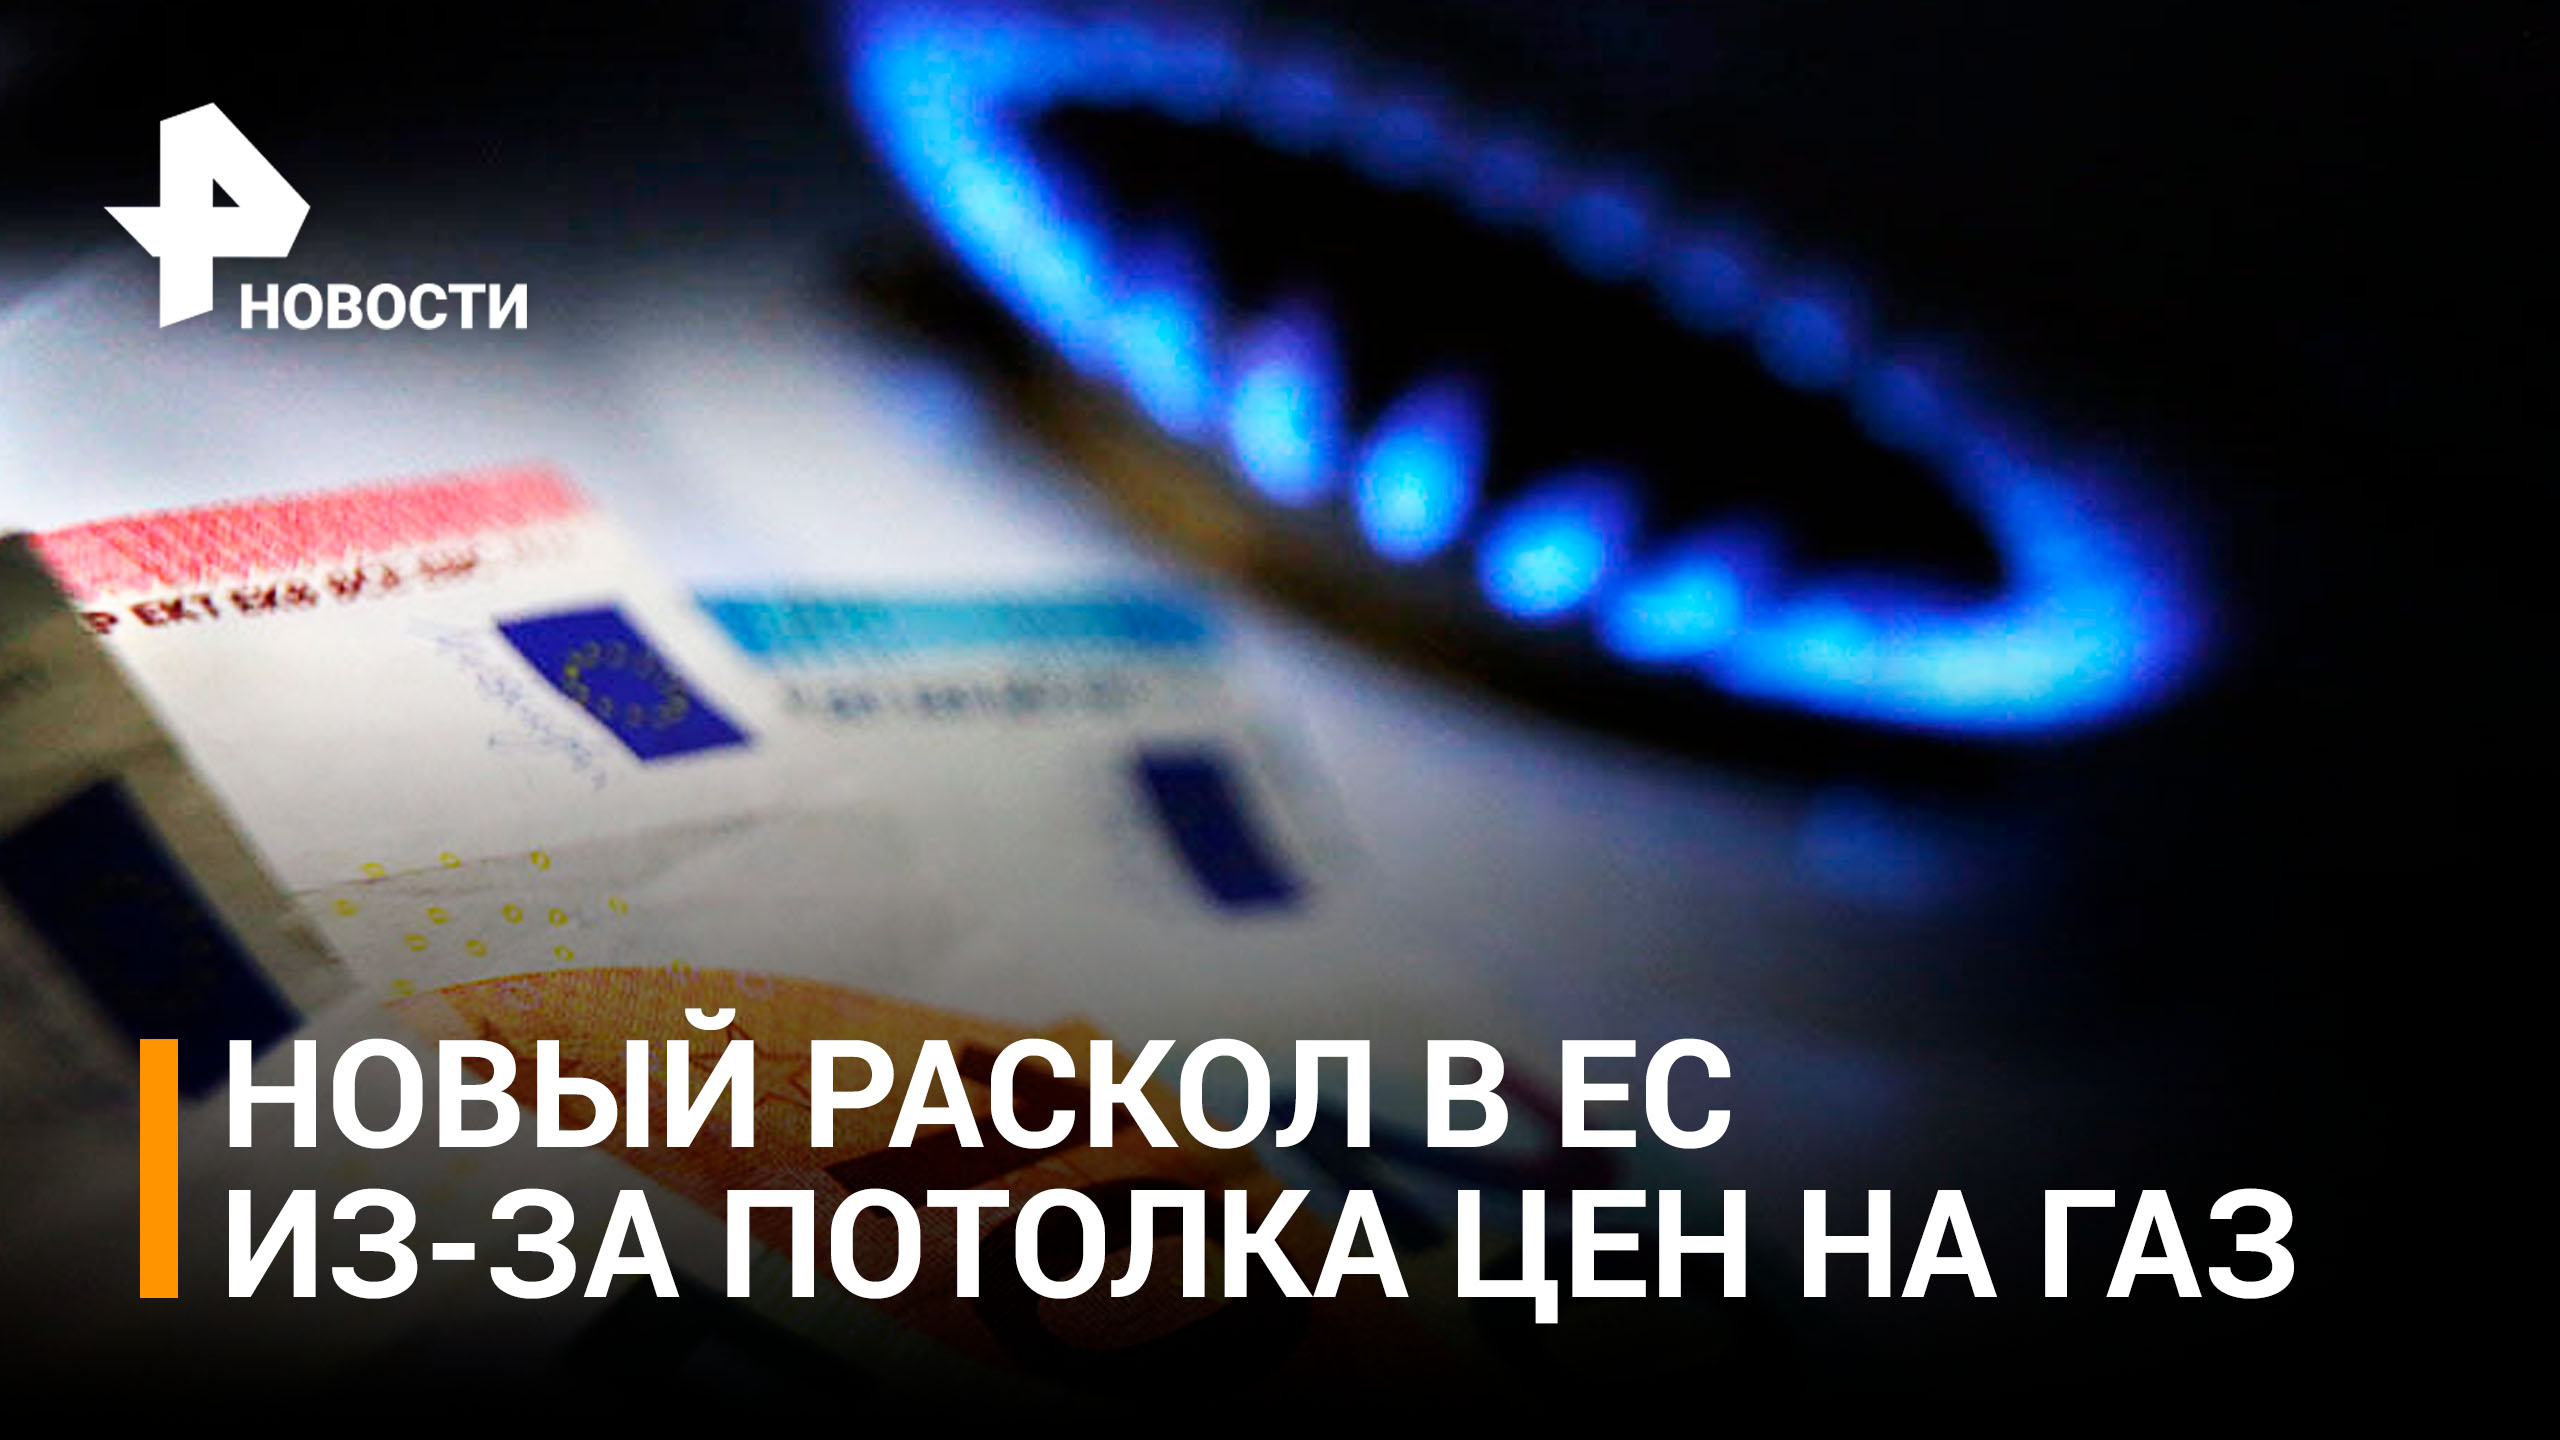 Потолок цен на газ вызвал критику и жесткие дискуссии в ЕС / РЕН Новости